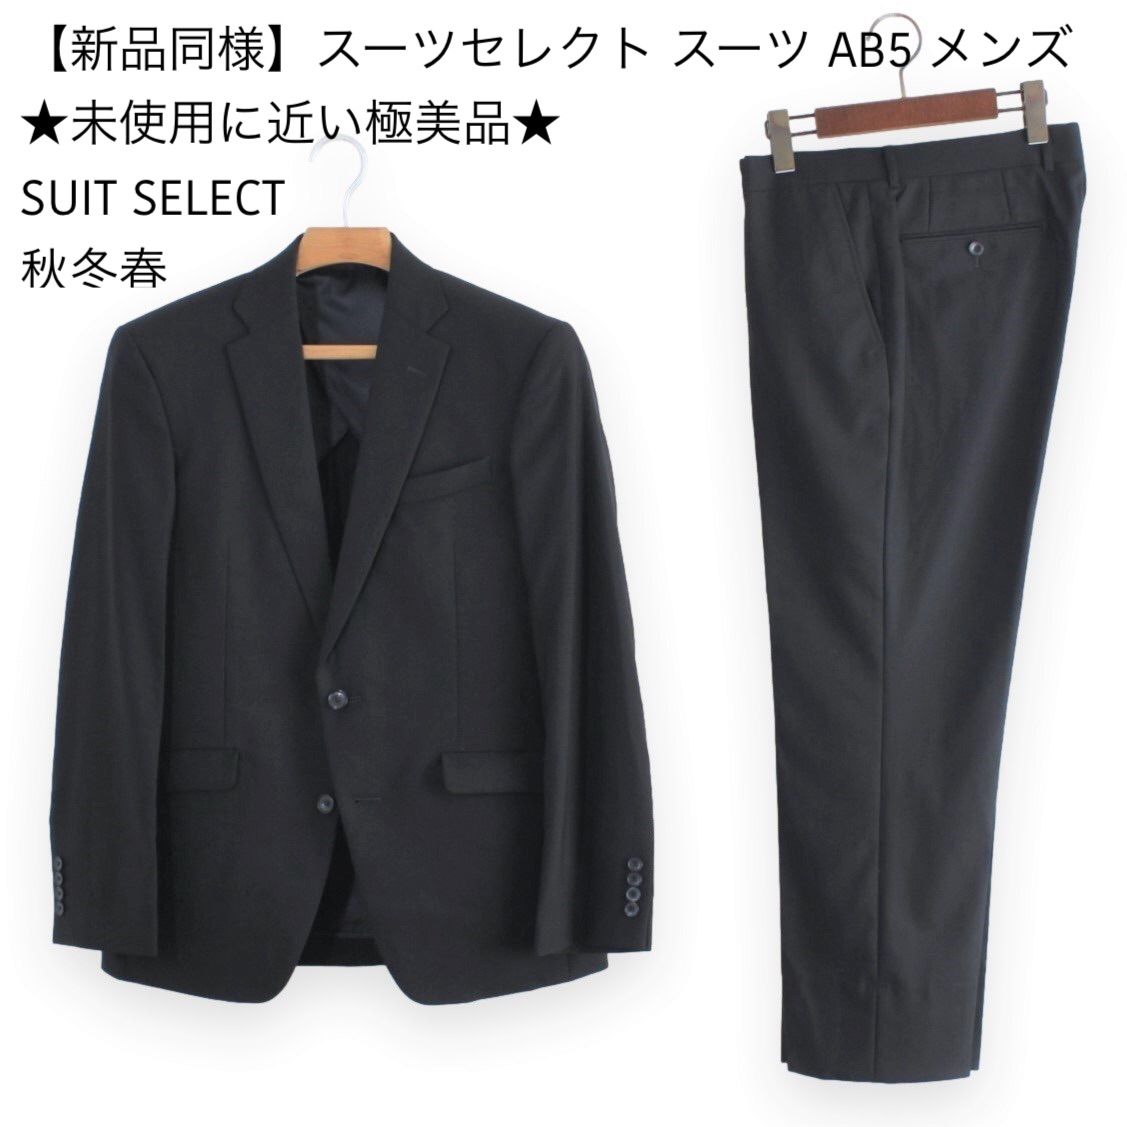 03【新品同様】スーツセレクト スーツ AB5 メンズ ややがっしり体の M L